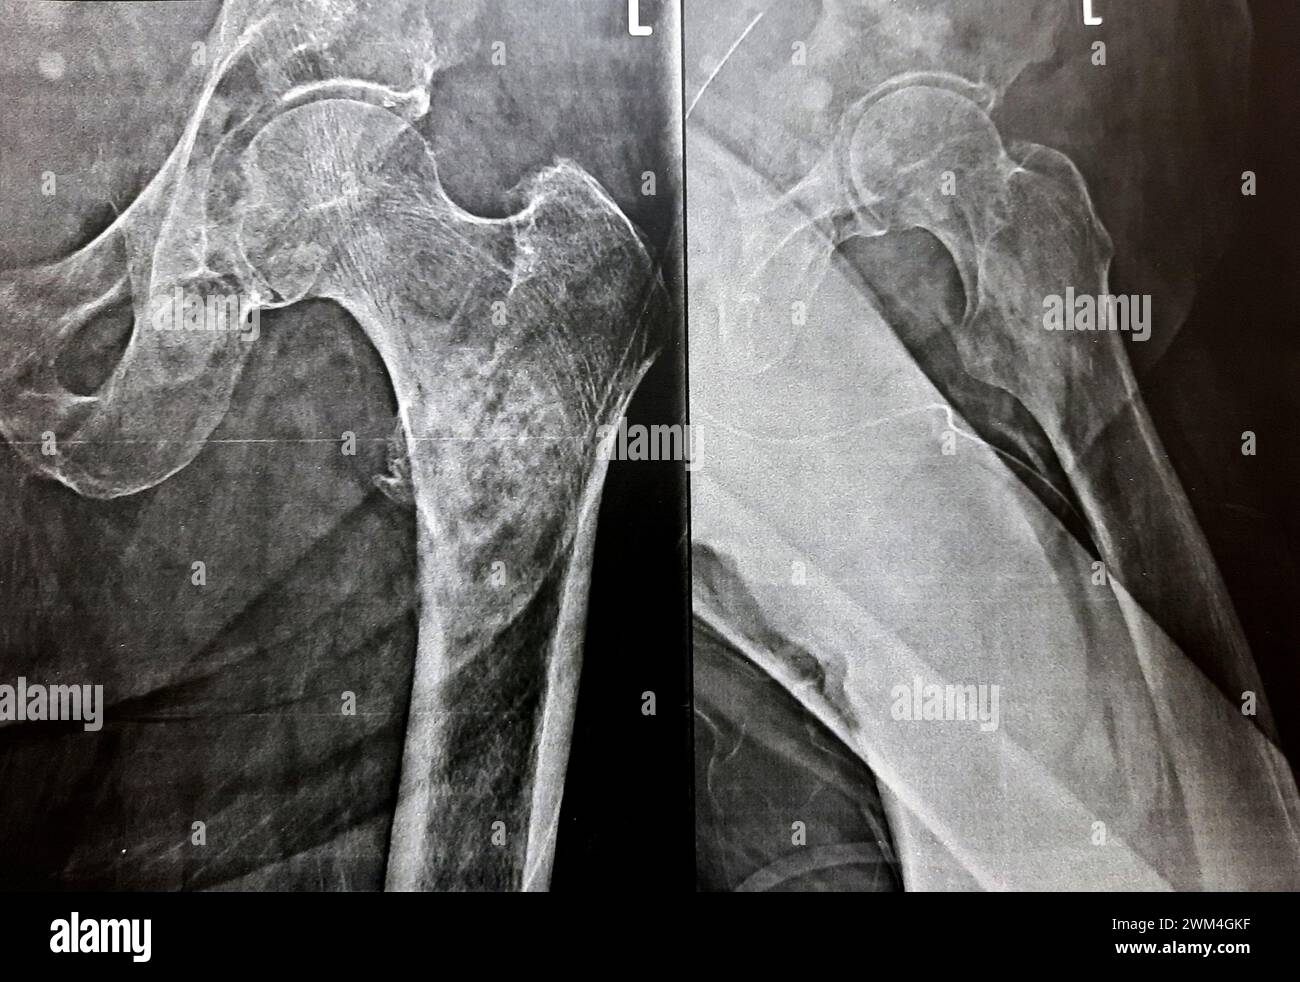 Radiographie simple avec une forte probabilité de fracture sous-trochantérienne, de fracture trochantérienne et de métastase maligne dans la partie médiane de la diaphyse fémorale en dessous Banque D'Images